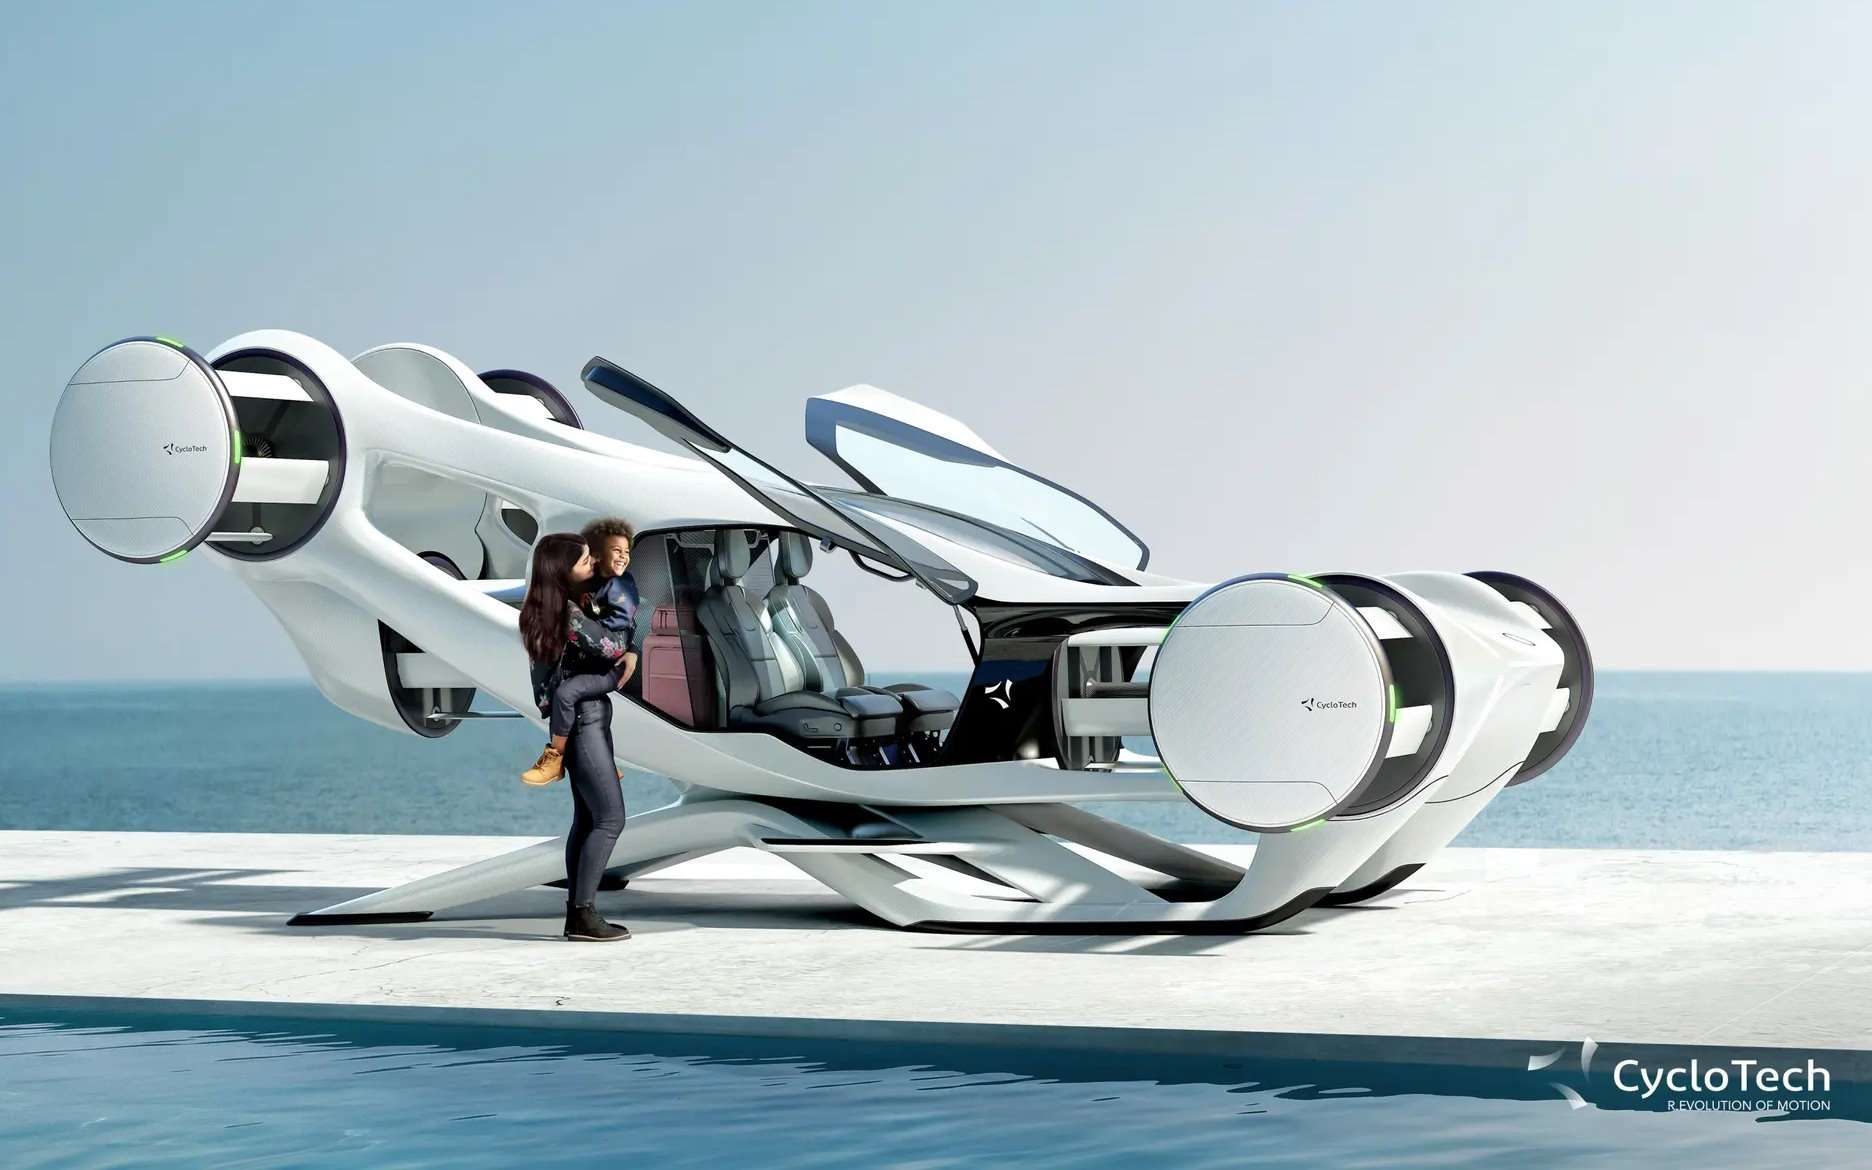 Une magnifique voiture volante sans aile et à propulsion cycloïdale qui fait rêver !